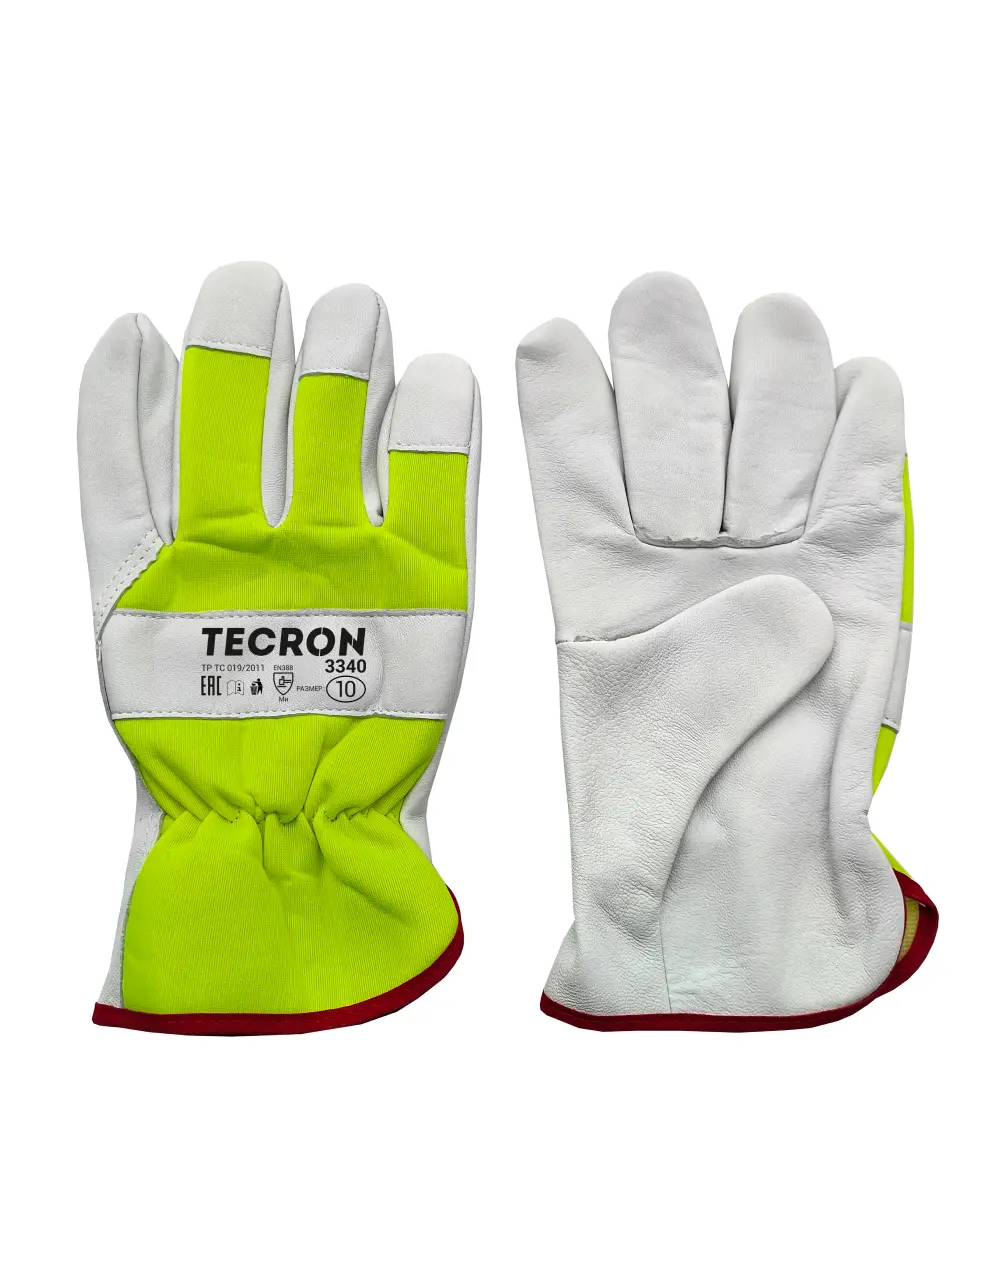 TECRON™ 3340 leather gloves